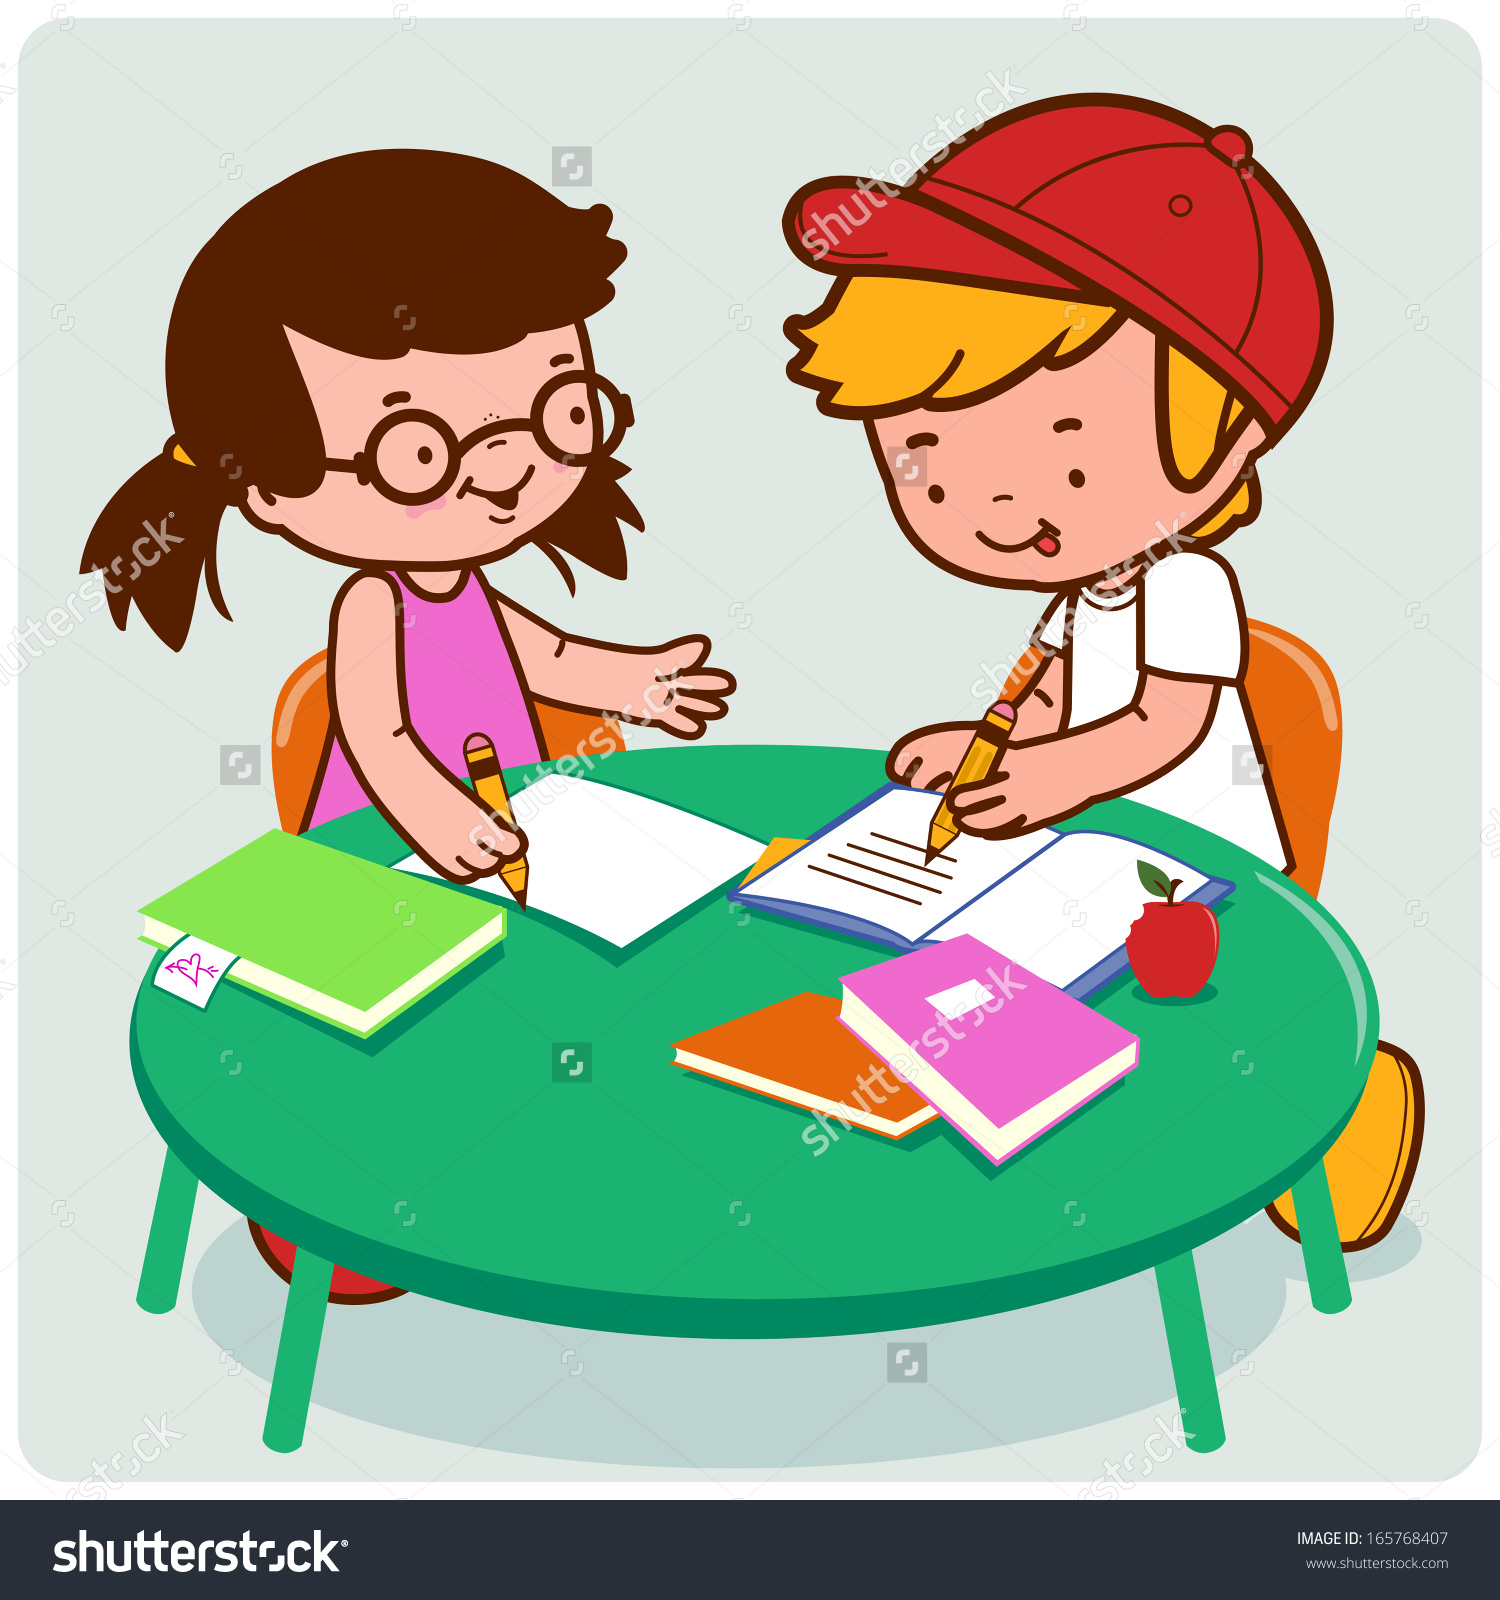 Будешь помогать с уроками. Иллюстрация ребенок делает уроки. Домашнее задание иллюстрация. Картинки на тему домашнее задание. Делать домашнюю работу рисунок.